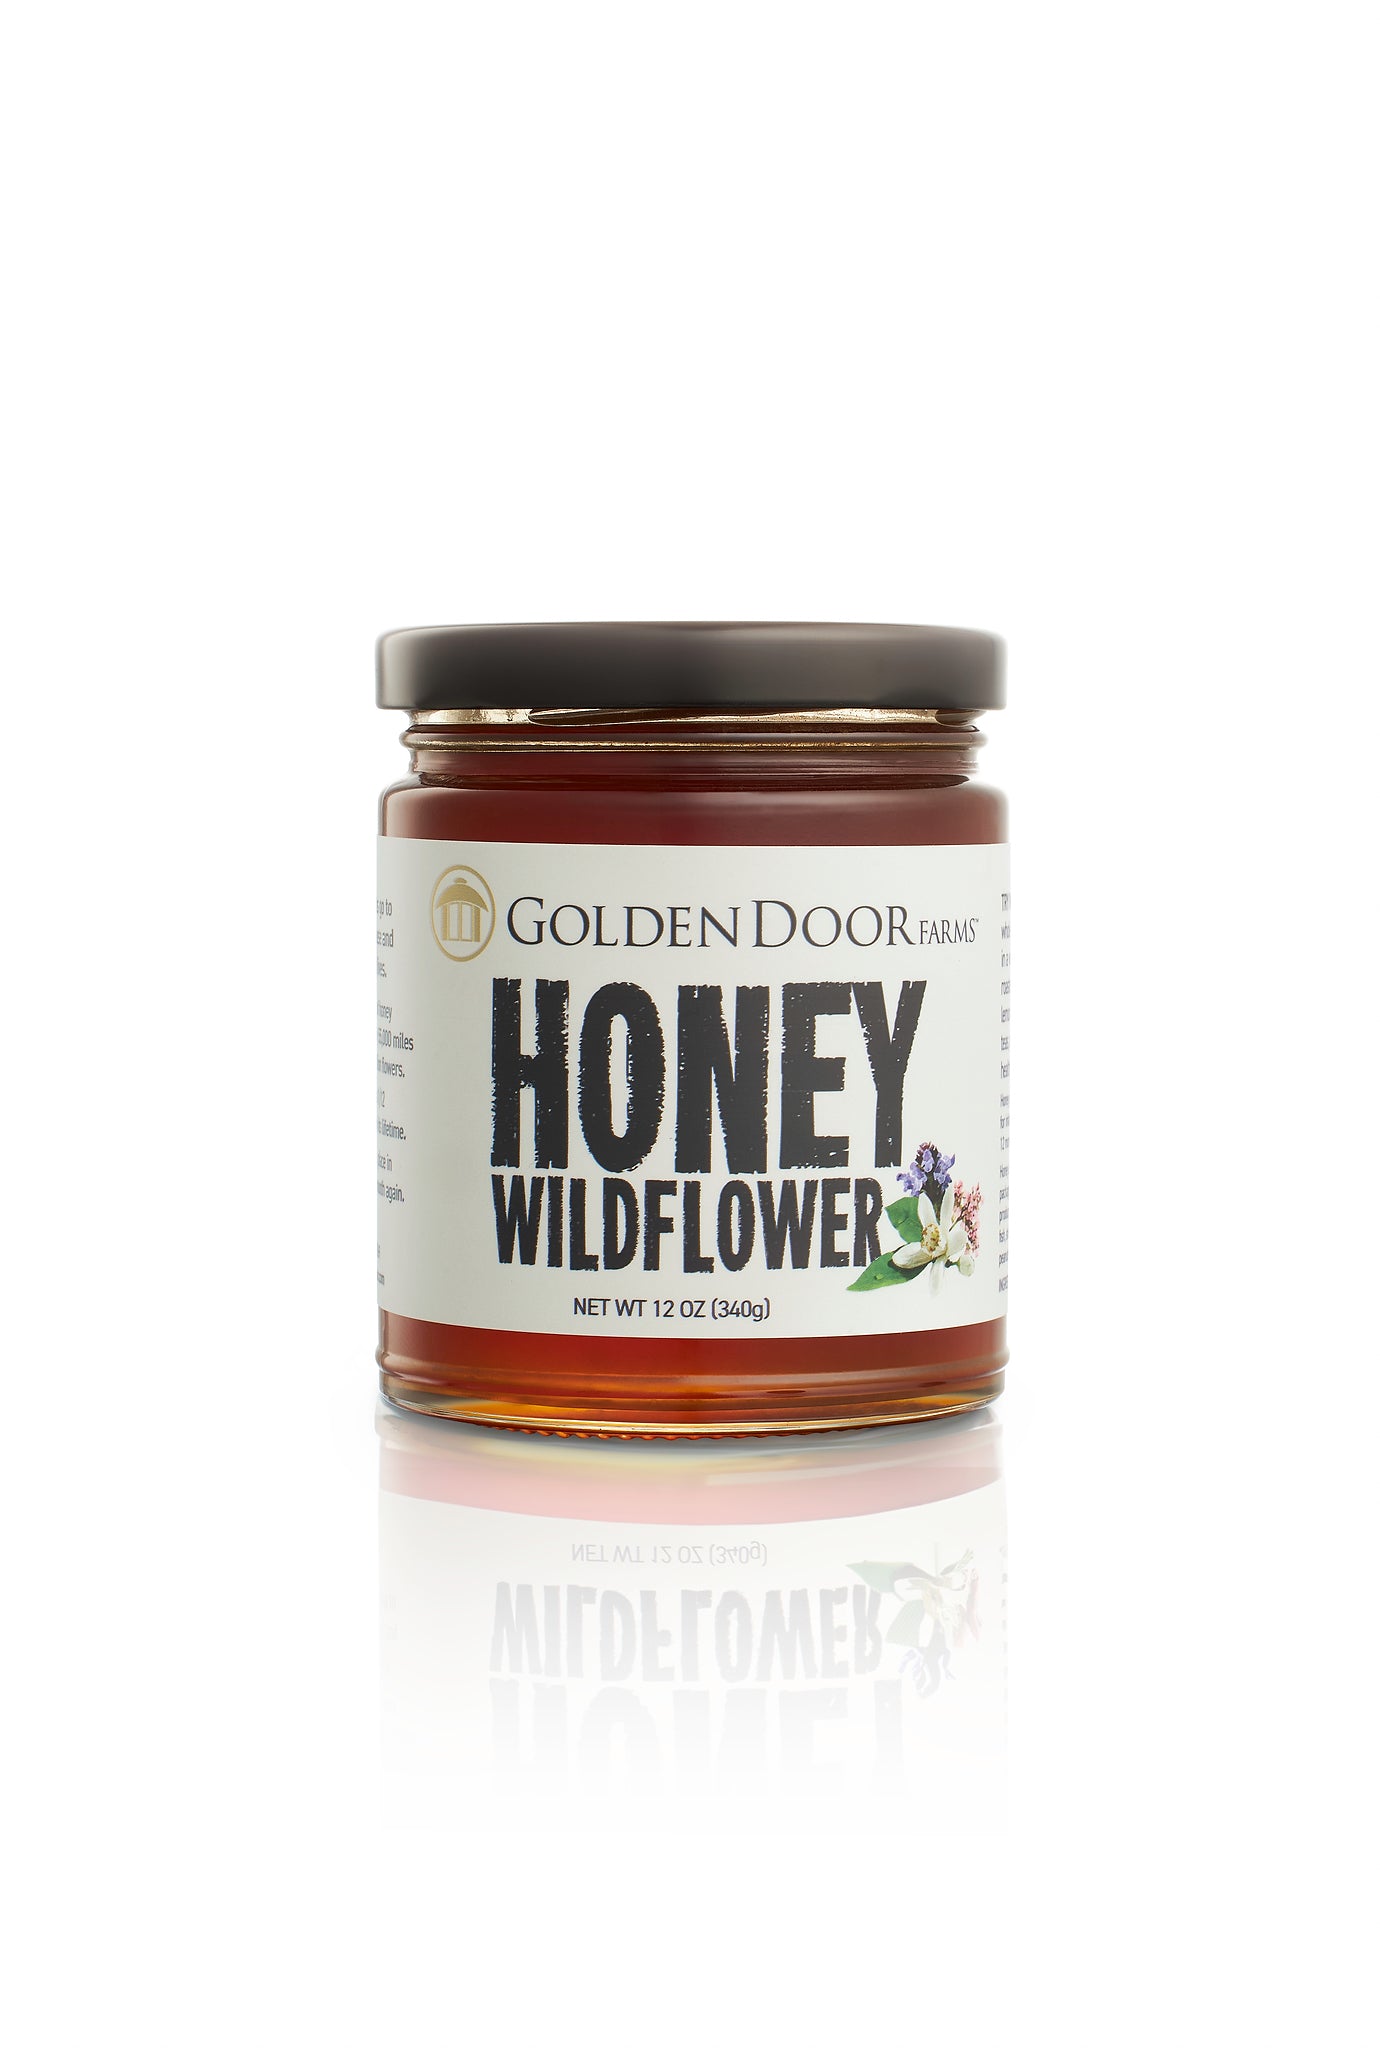 Golden Door Wildflower Honey